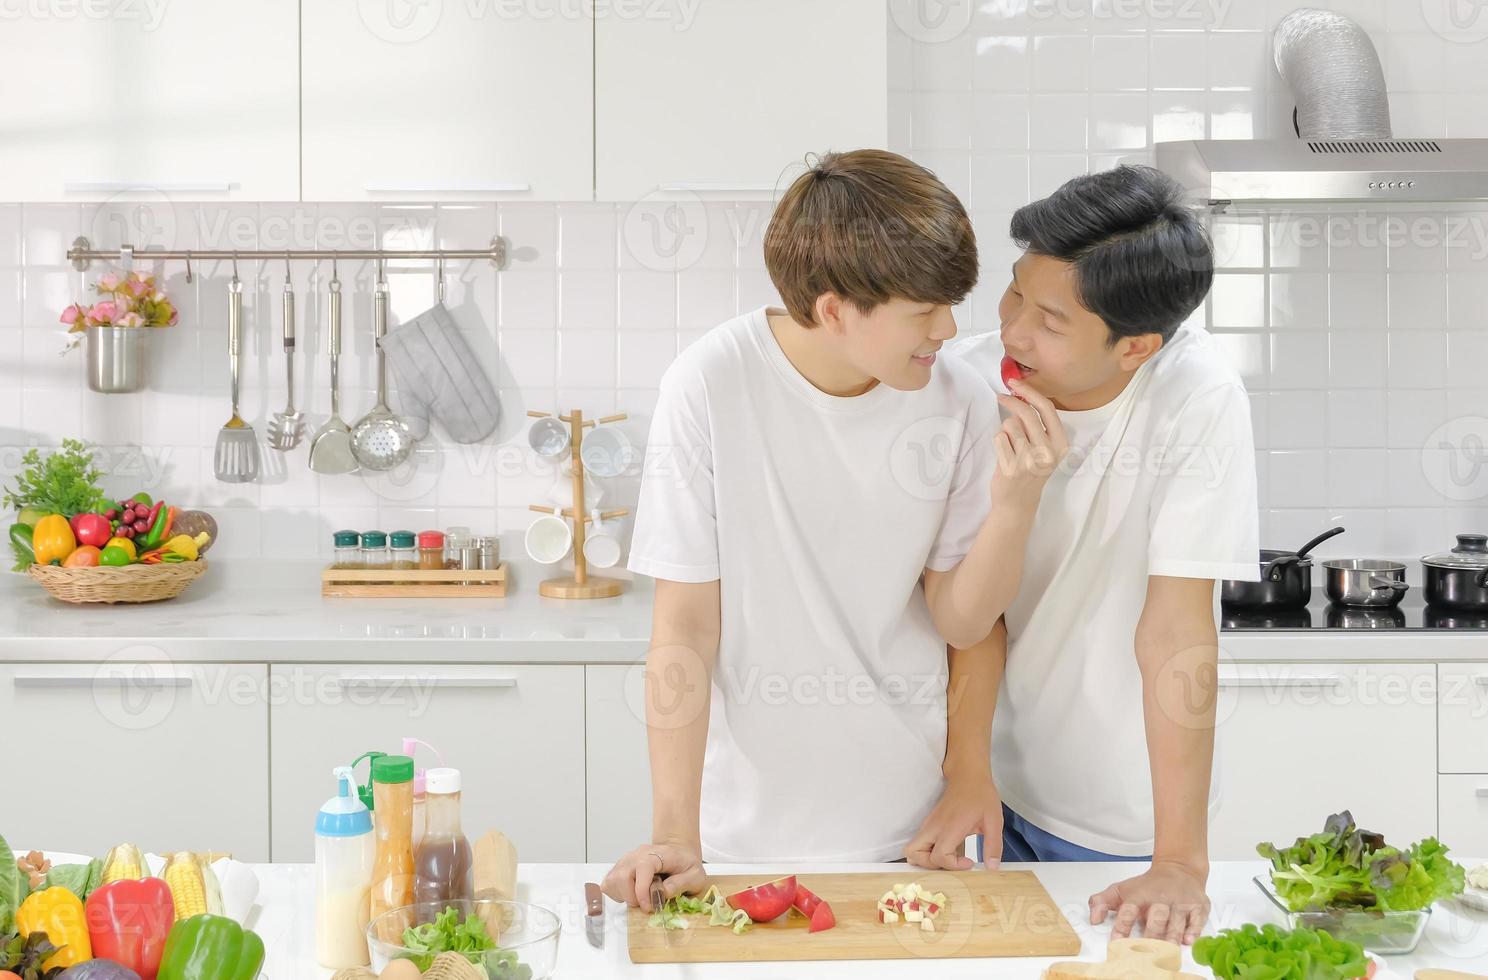 íntimo casal masculino jovem asiático tendo momento romântico juntos na cozinha durante o cozimento. conceito de vida doméstica lgbt. foco seletivo. foto